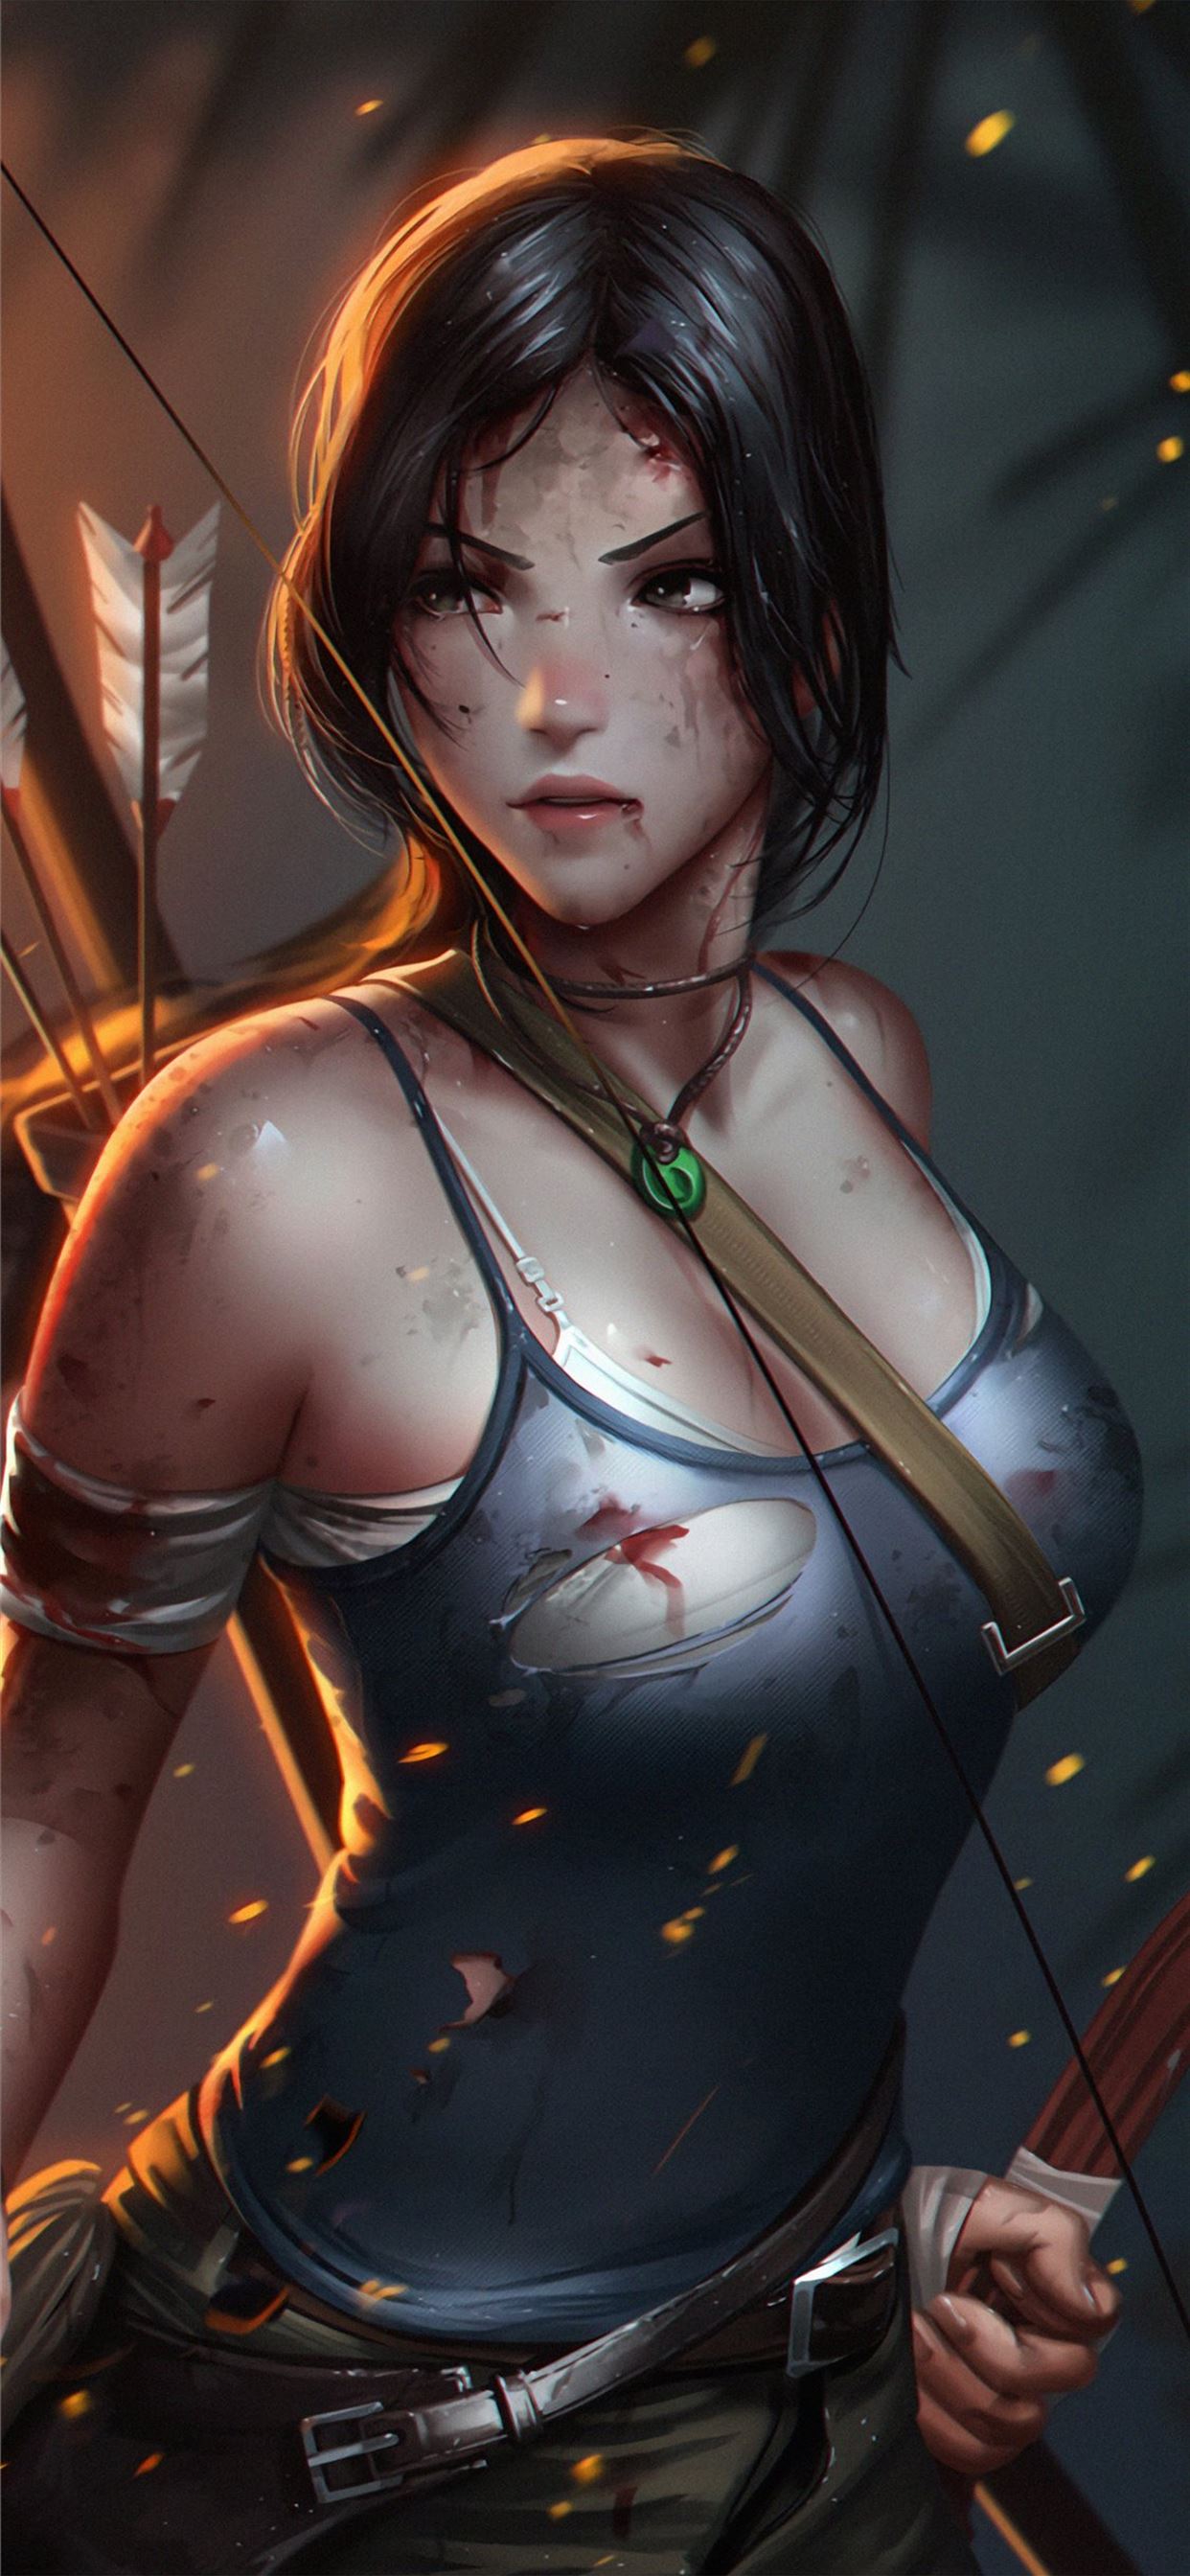 Wallpaper 4k Lara Croft Tomb Raider Fantasy Wallpaper